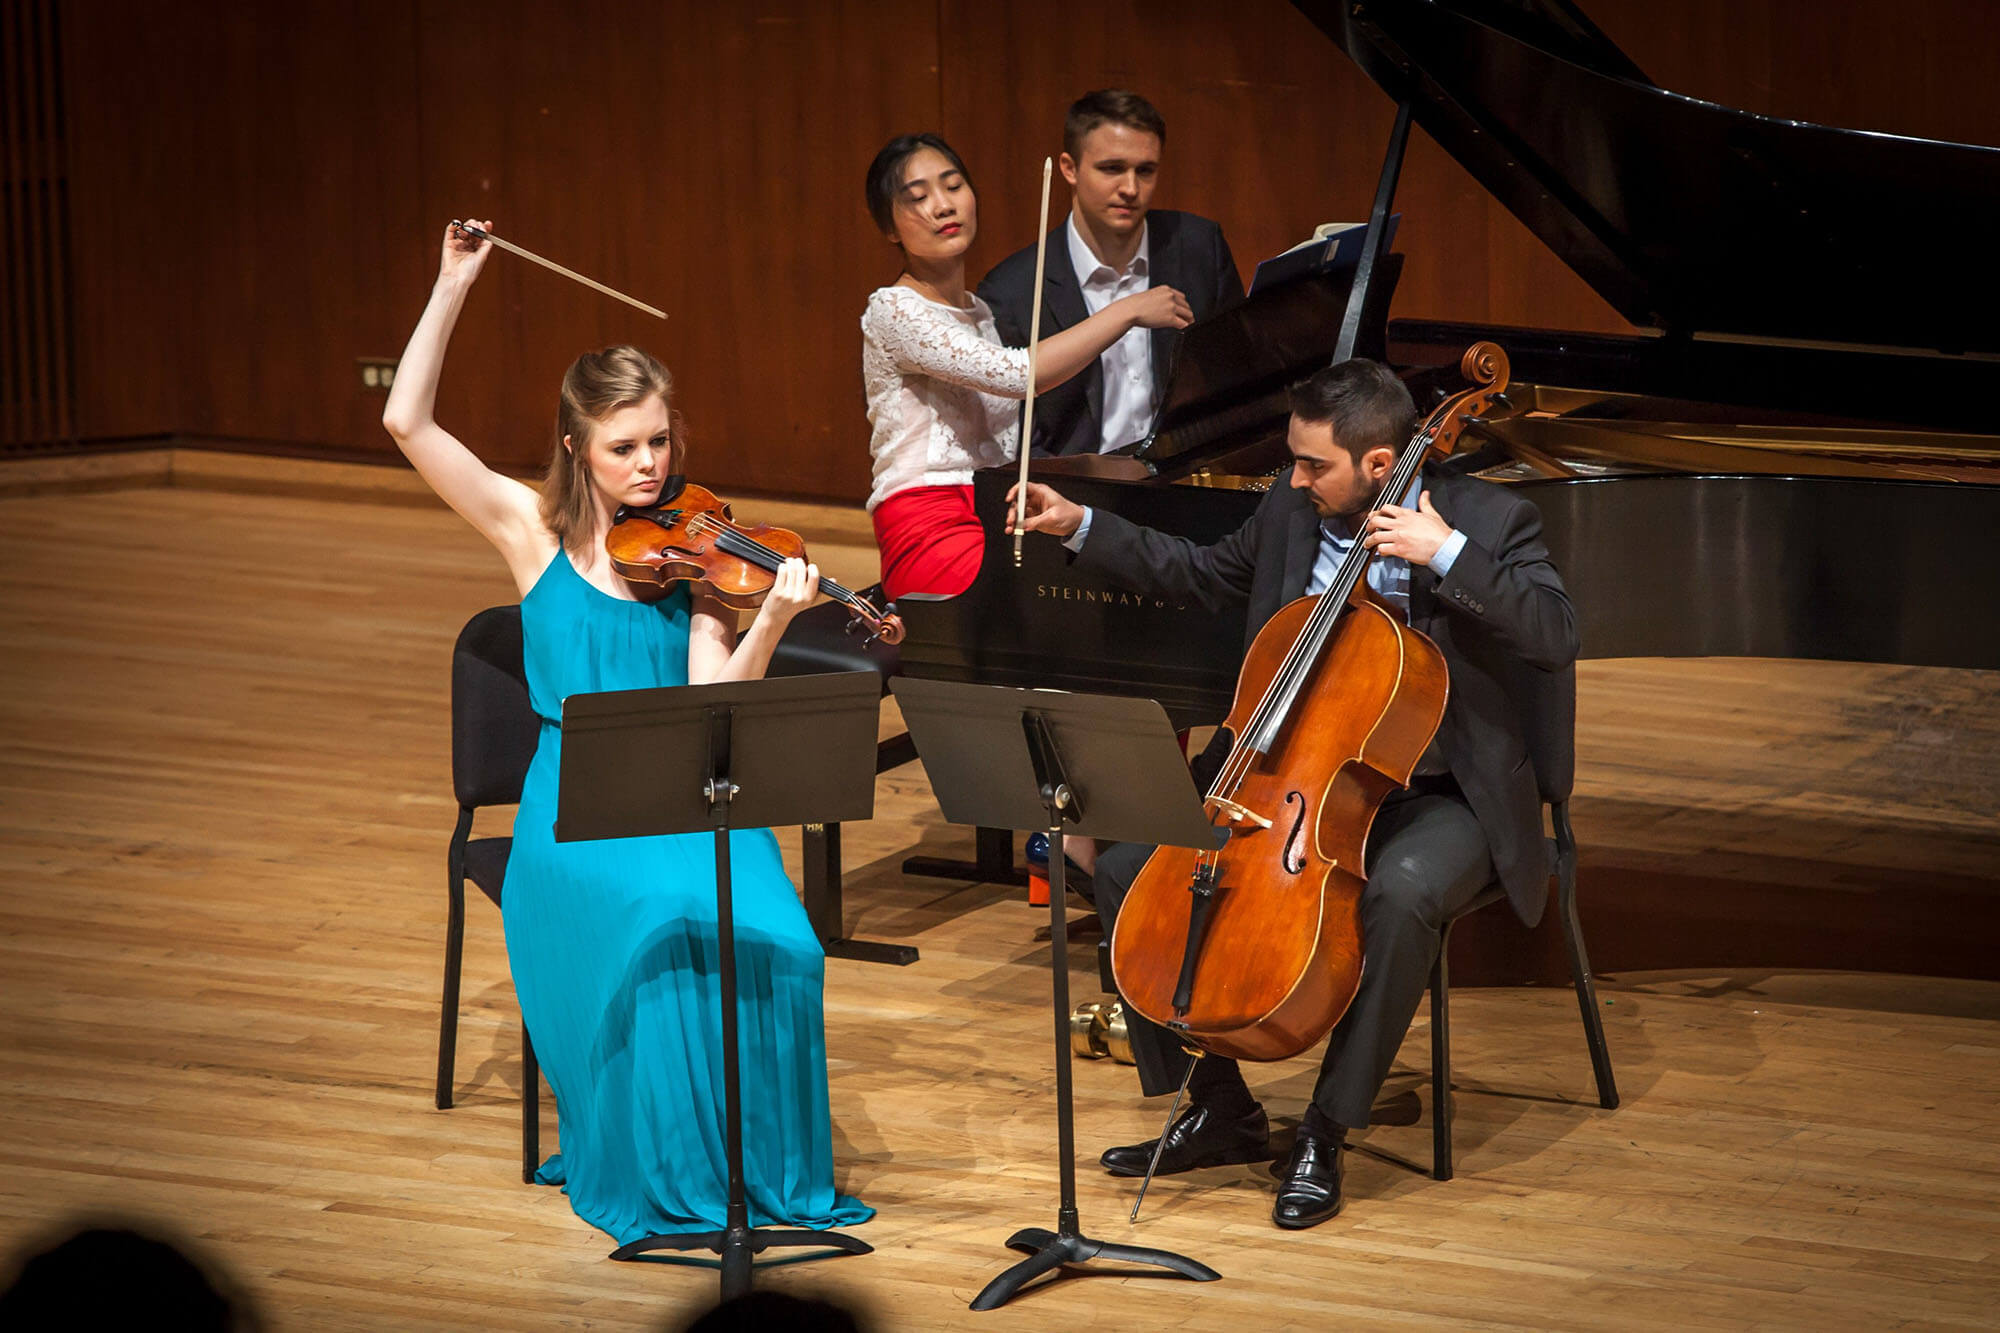 violin, cello, piano trio performing onstage